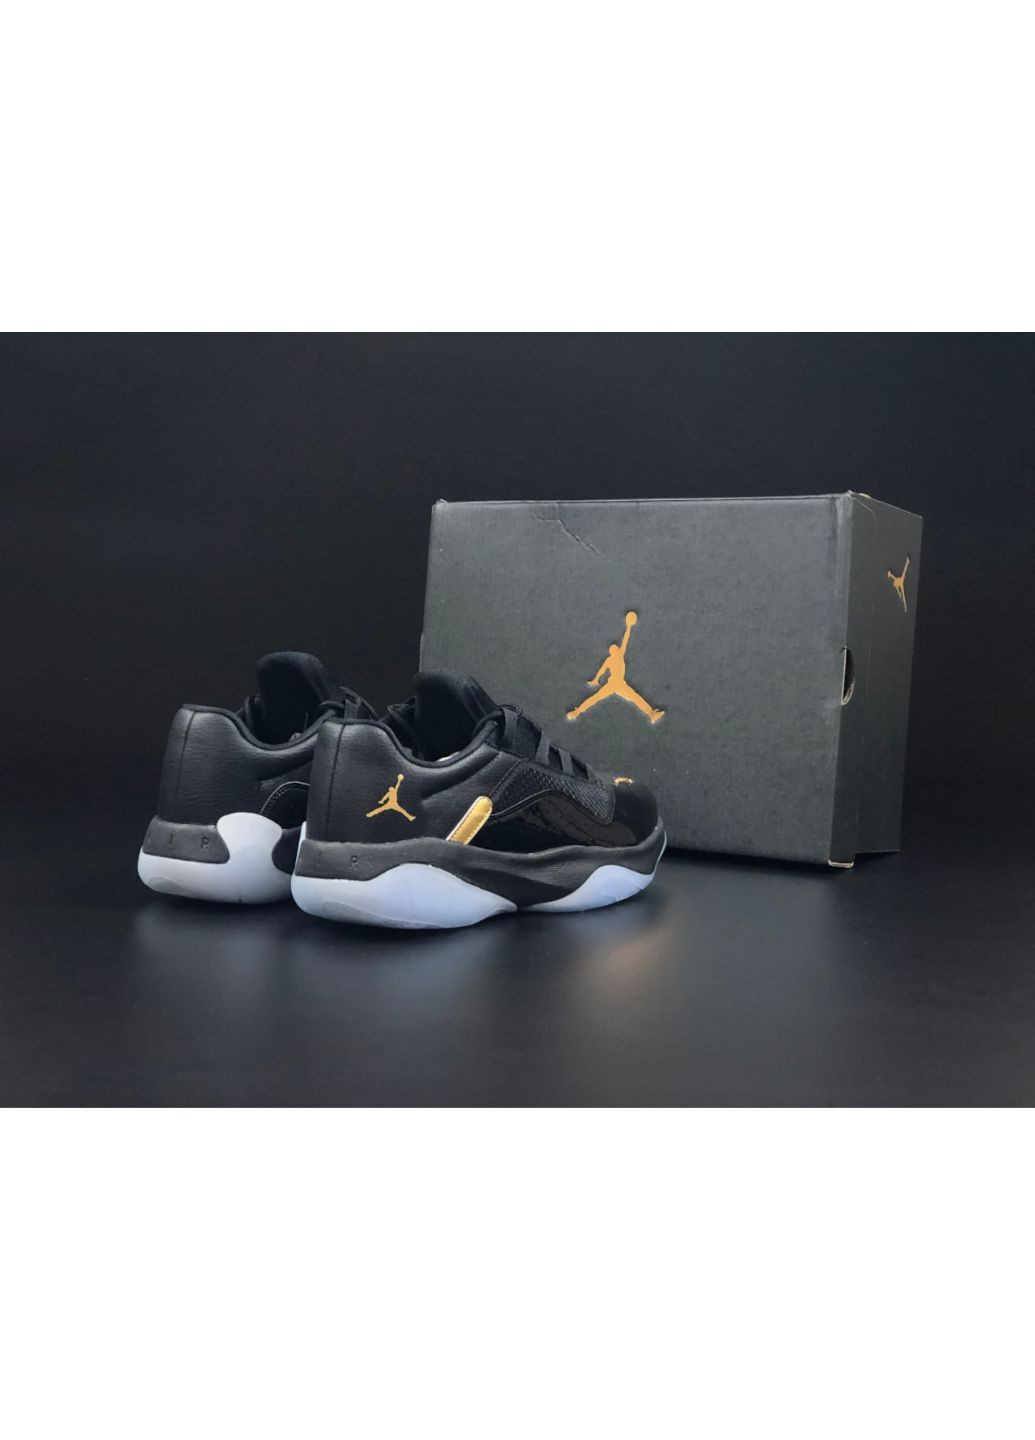 Чорні Осінні чоловічі кросівки чорні «no name» Nike Air Jordan 11 cmft